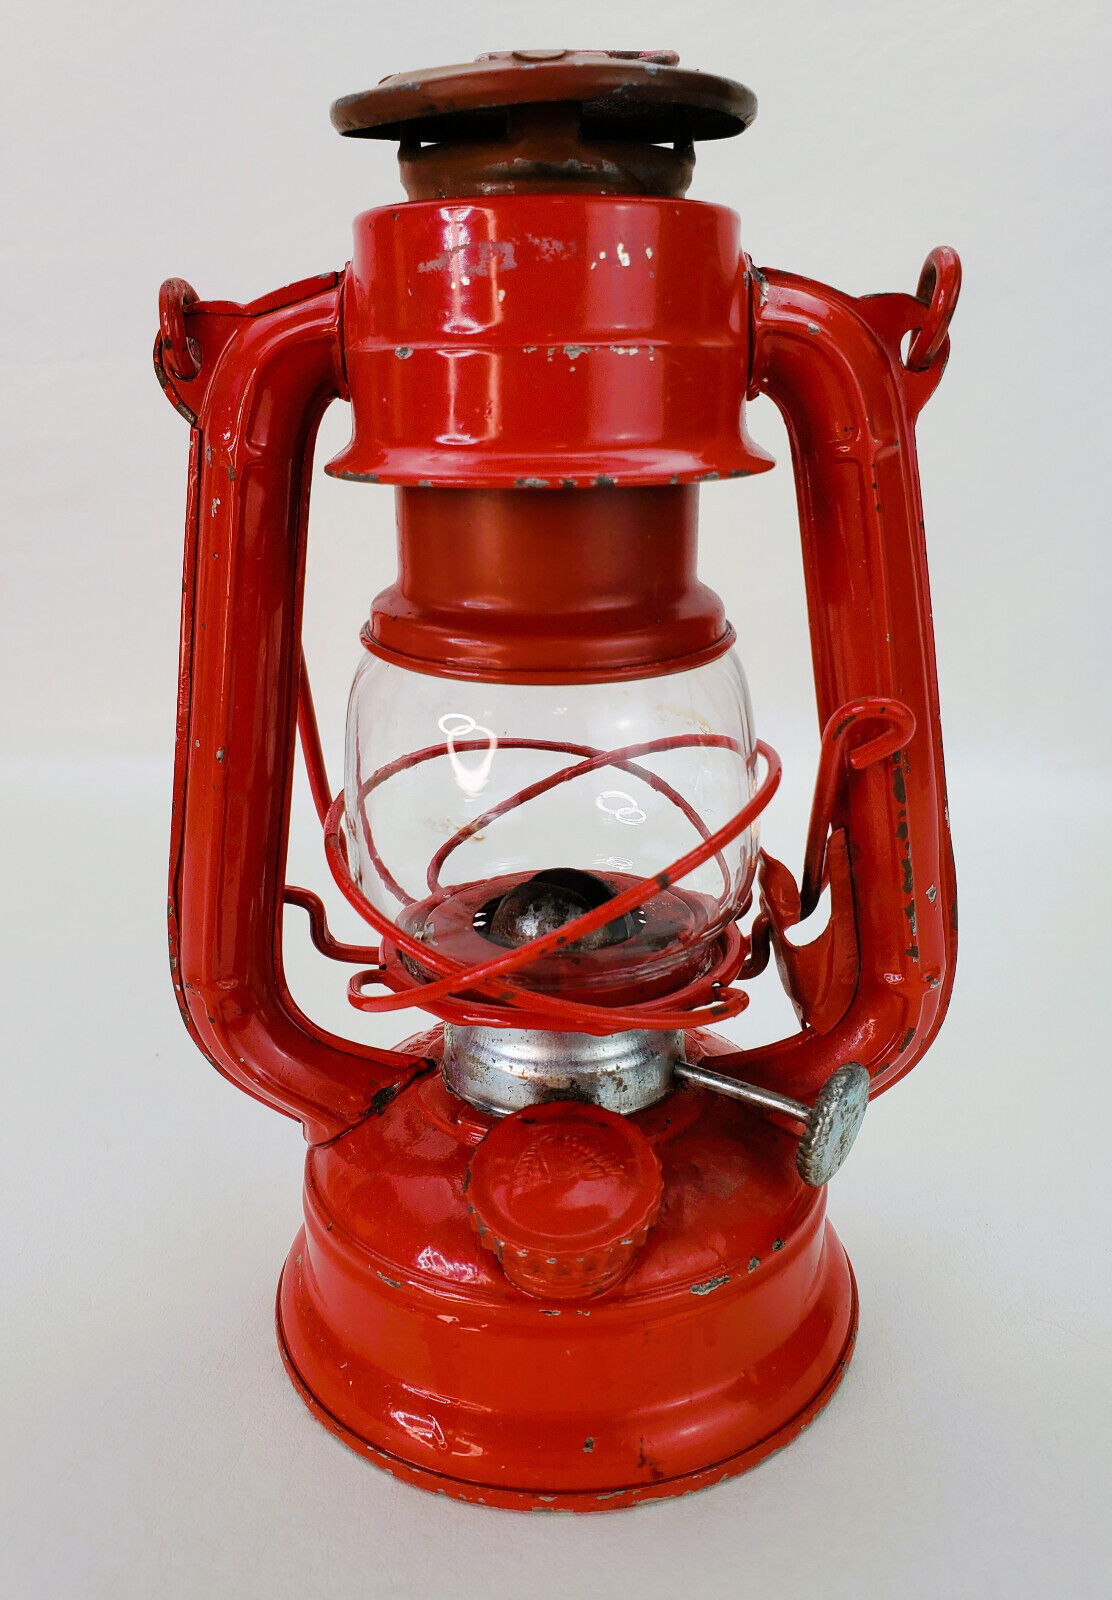 Vintage Winged Wheel No. 350 Red Kerosene Railroad Lantern Made in Japan